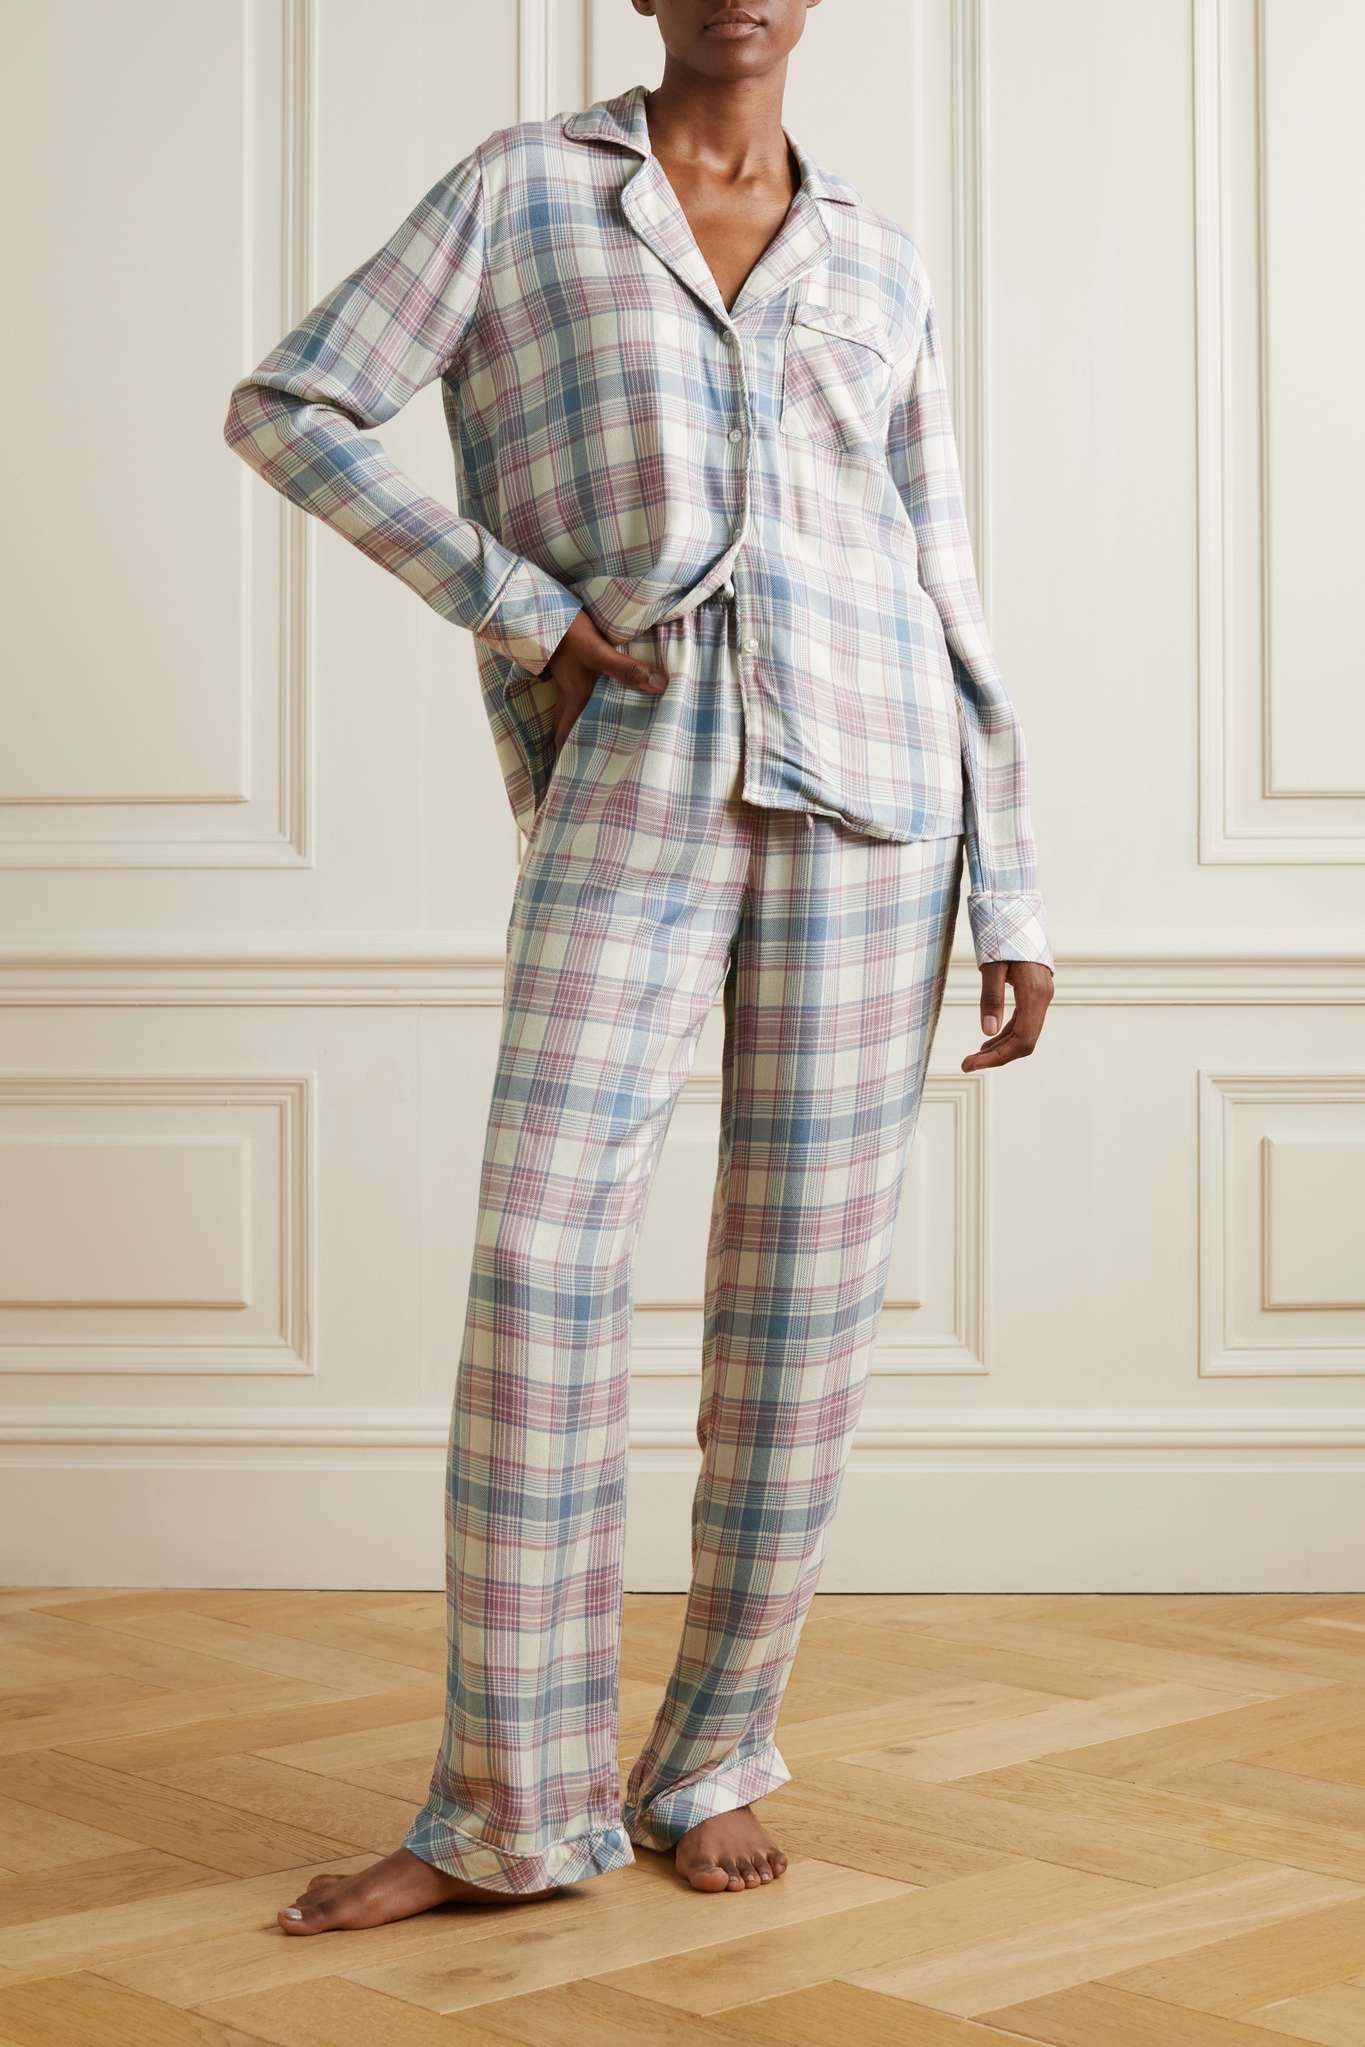 Flannel
Pajamas For Comfortable Sleep